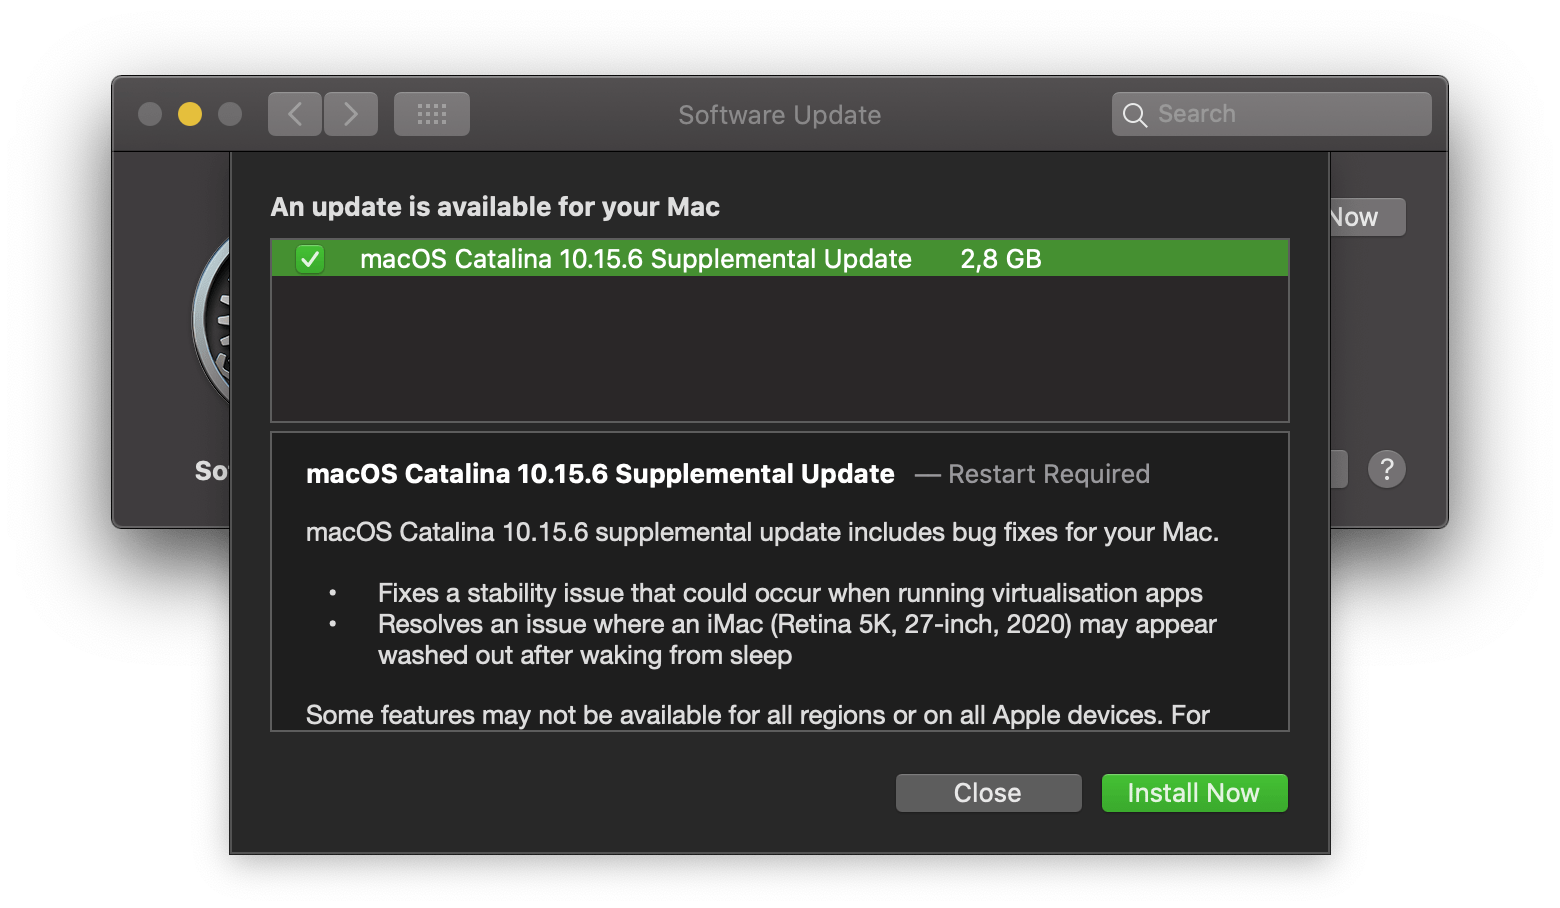 macOS 10.15.6 Supplemental Update